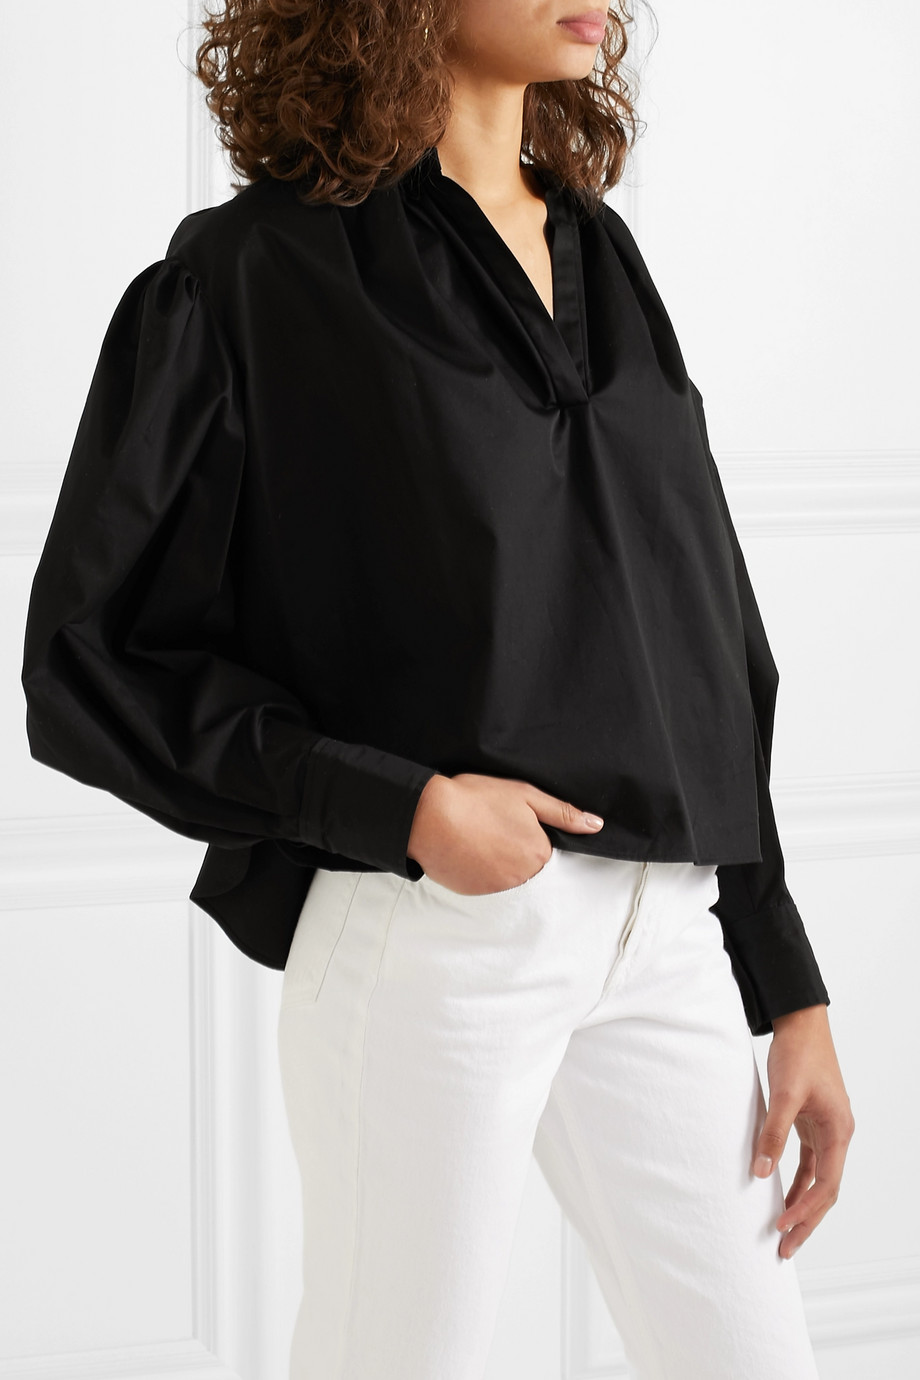 Блузка с длинным рукавом Isabel Marant, Étoile для женщин